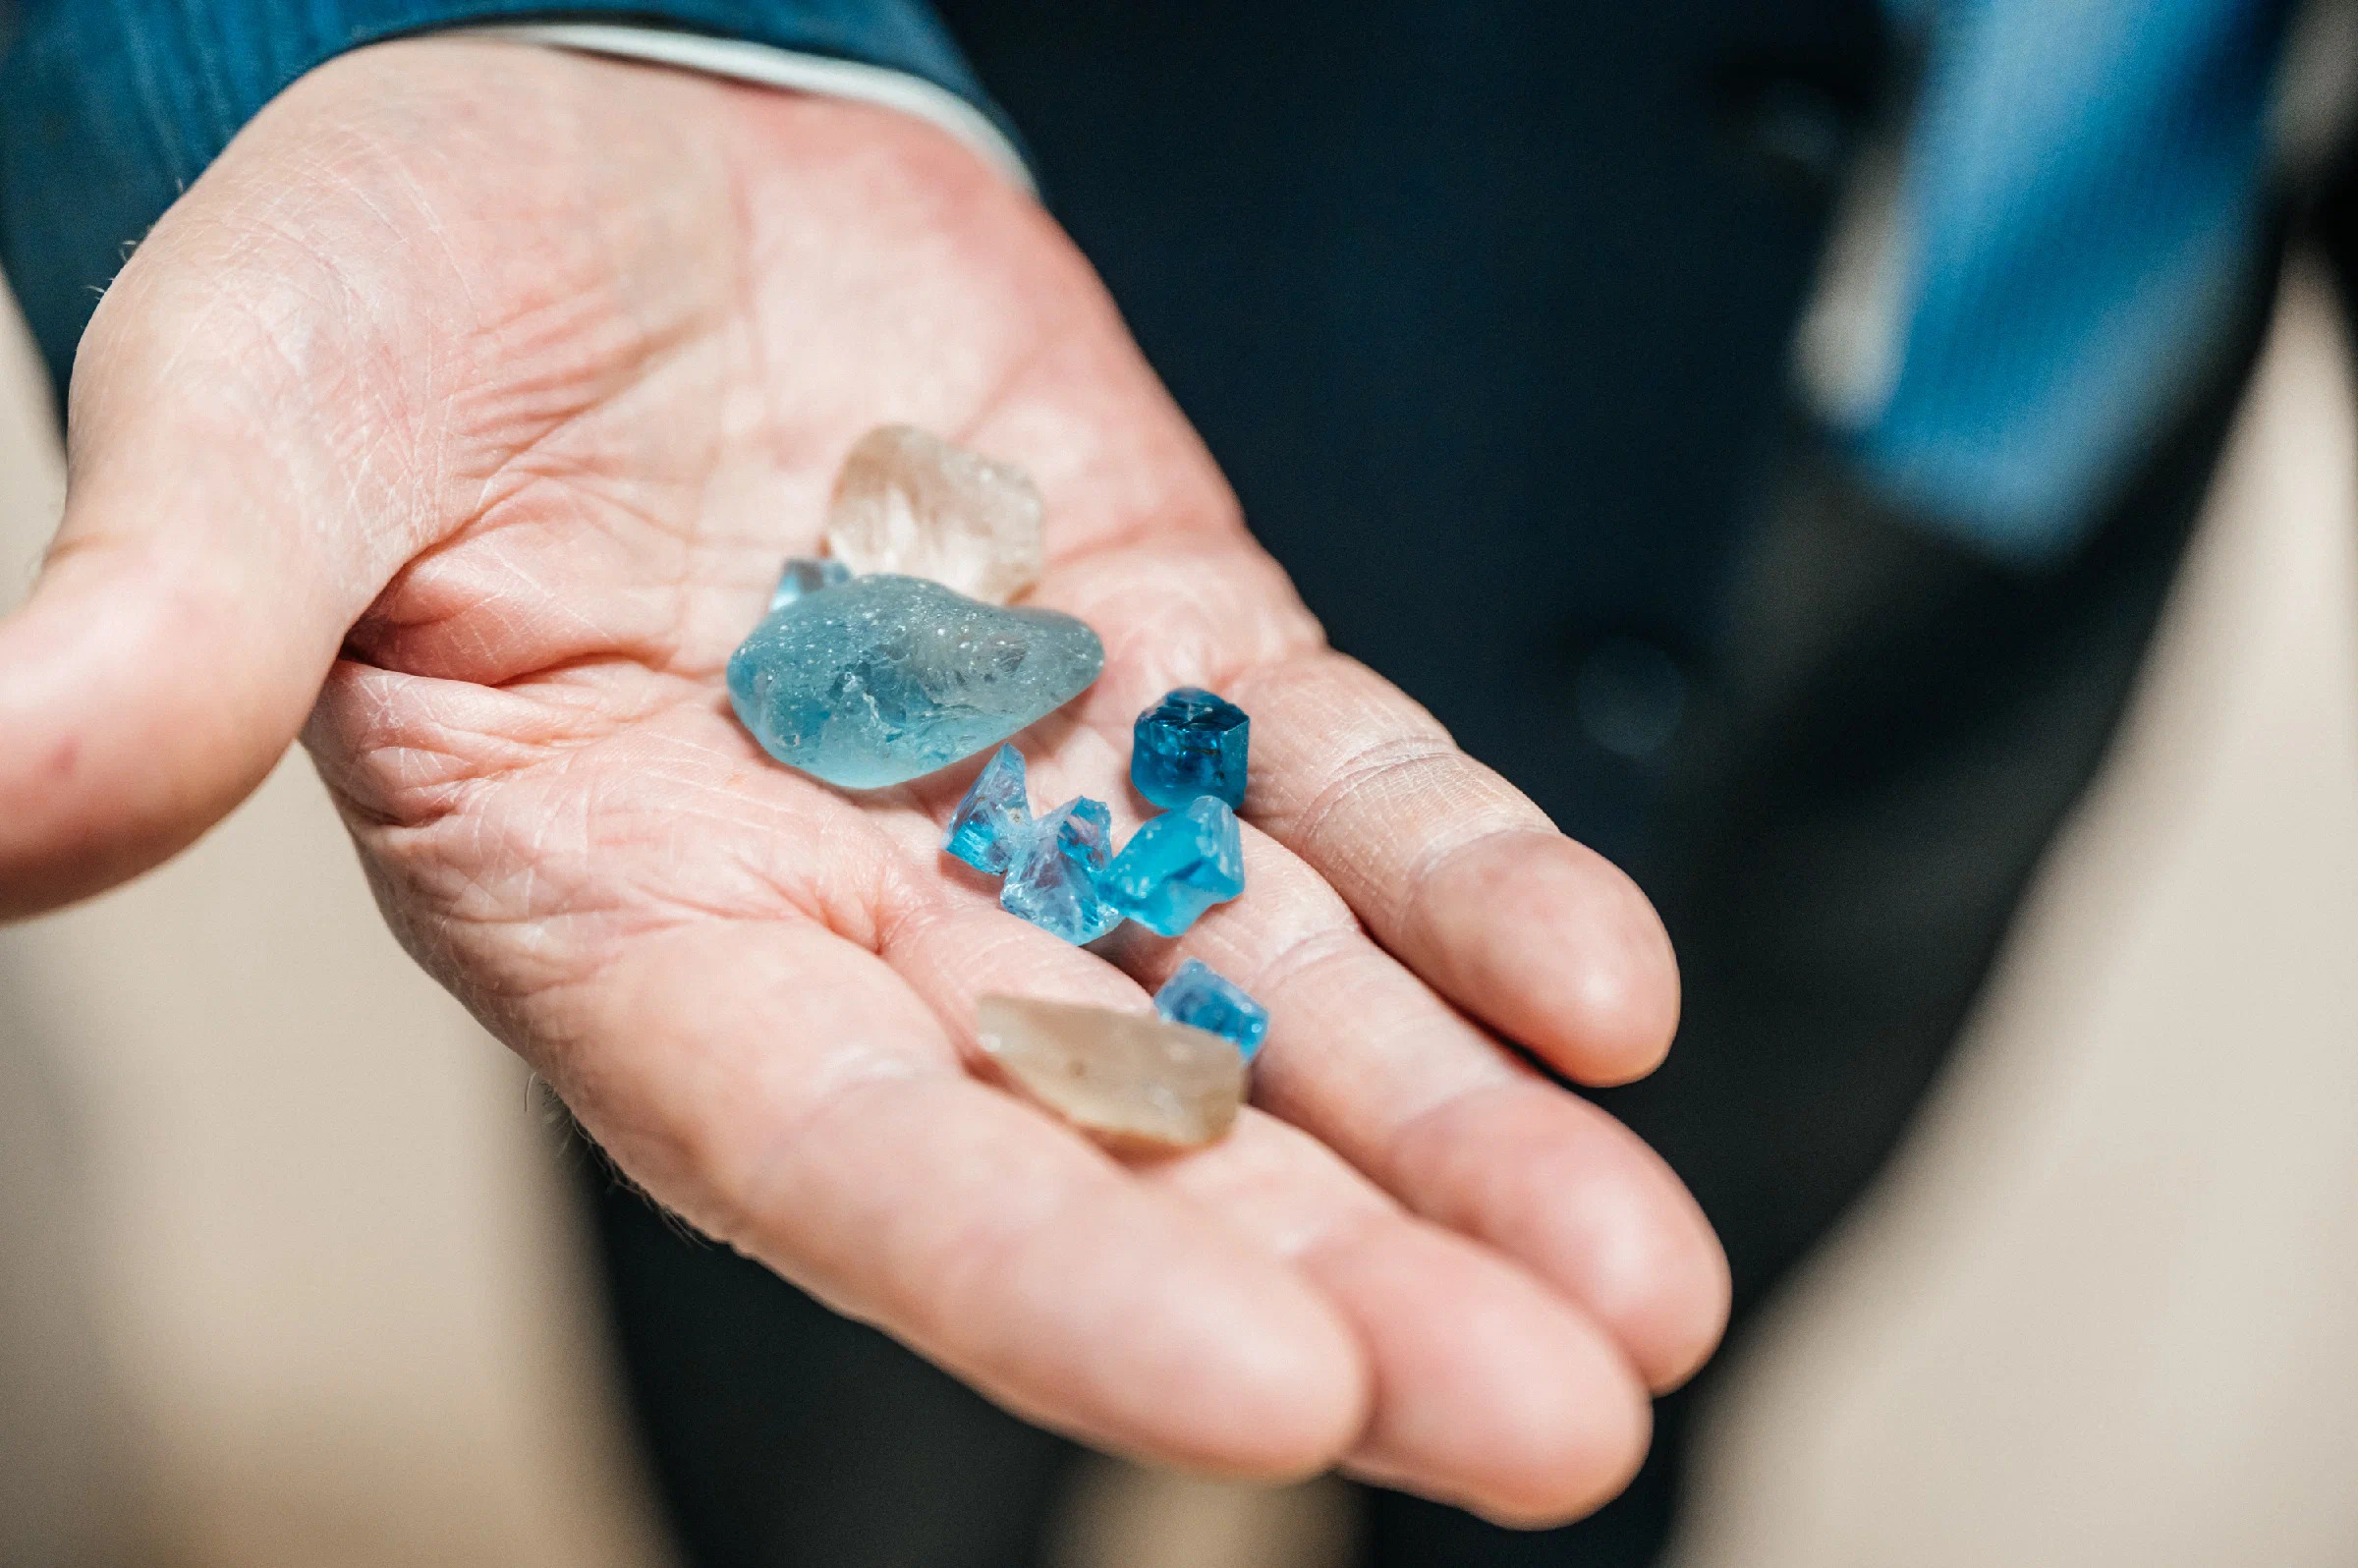 Драгоценный Sky Blue: как в ядерном реакторе создают камни для ювелирных украшений